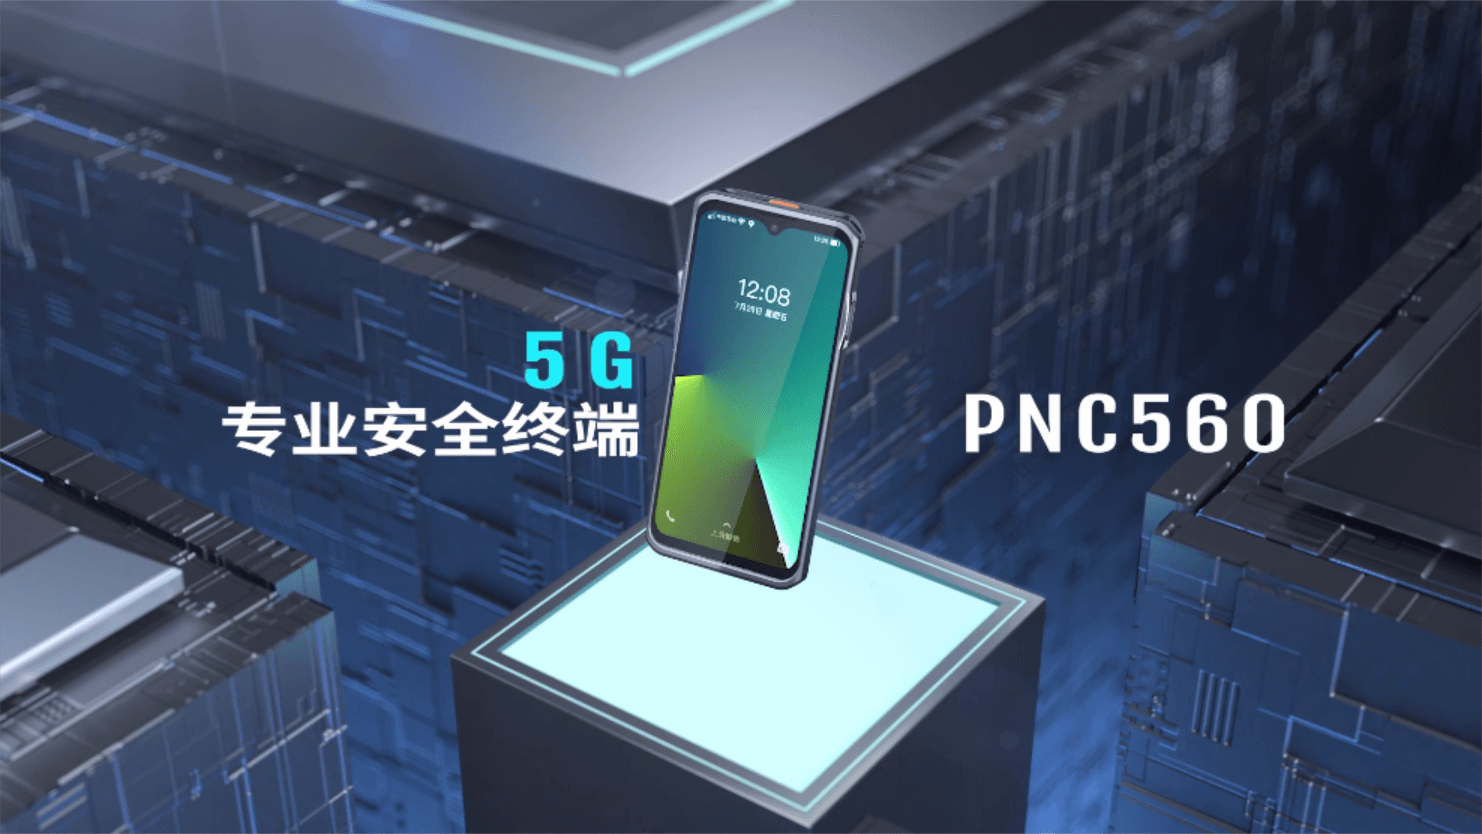 5G专业安全终端PNC560